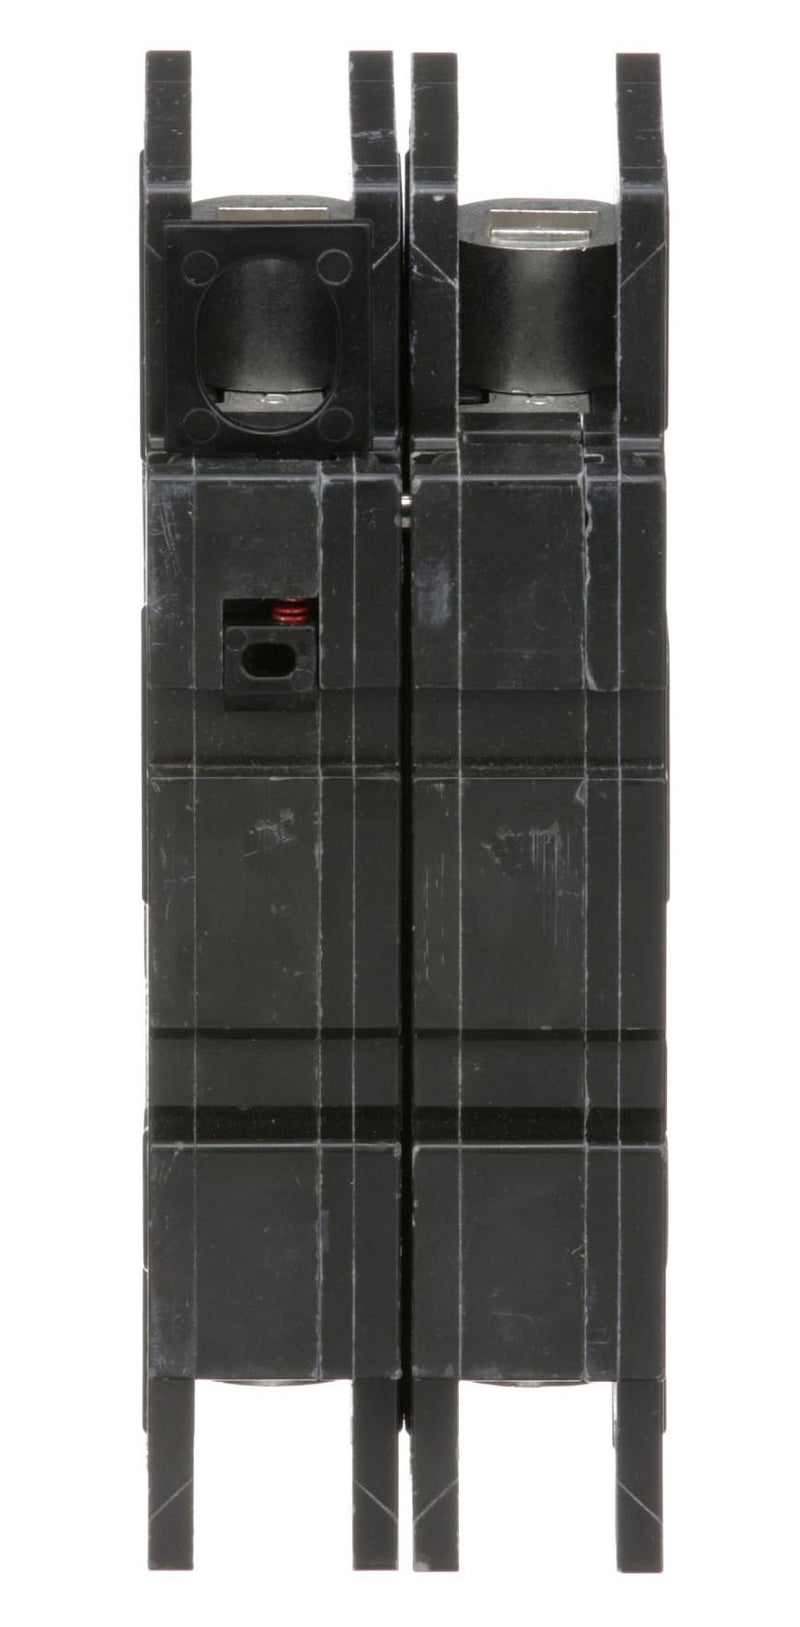 QOU2125 - Square D 125 Amp 2 Pole 240 Volt Bolt-On Molded Case Circuit Breaker